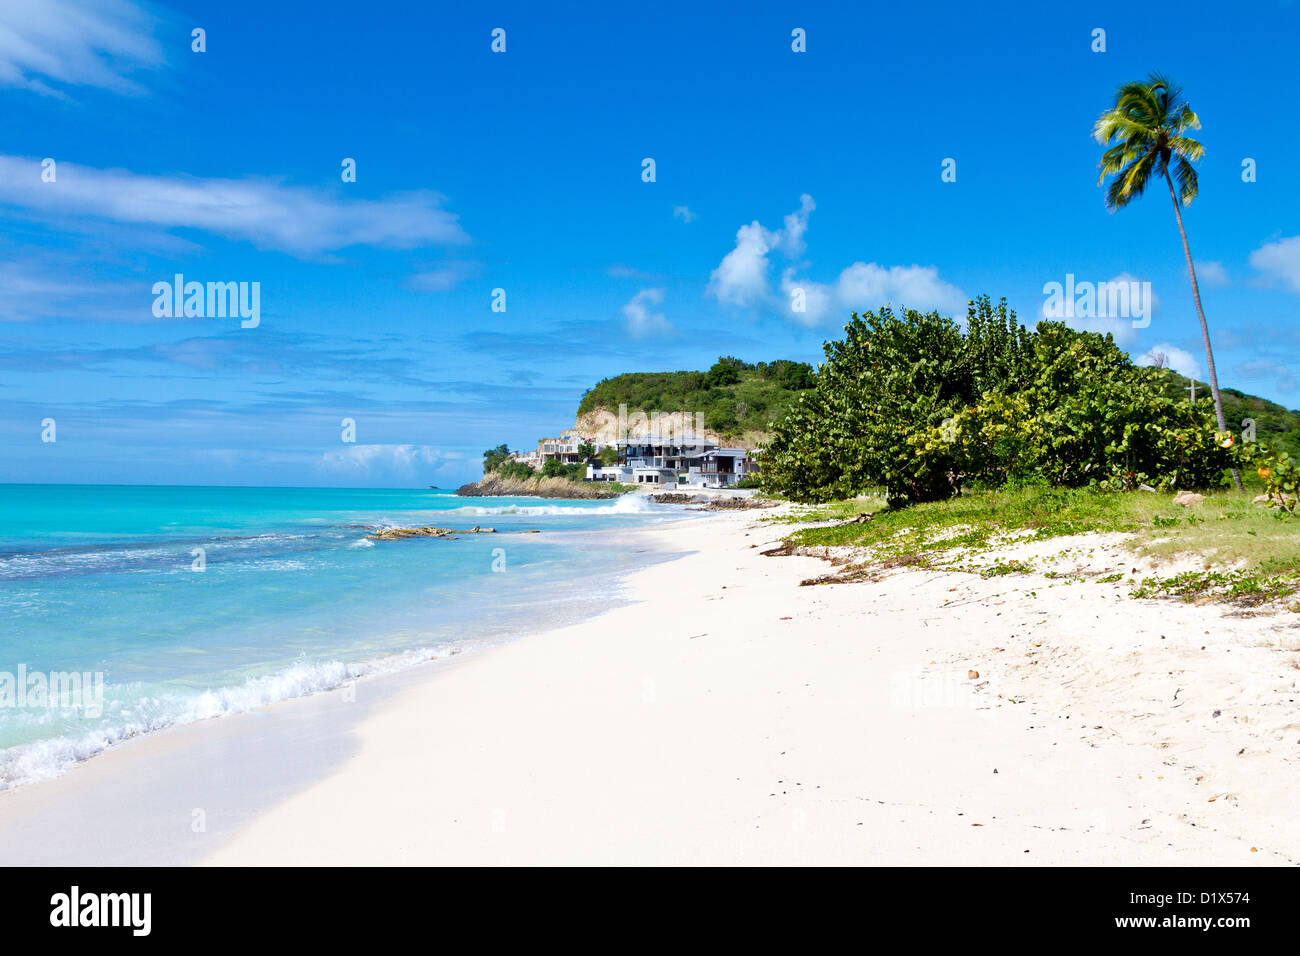 Une plage paradisiaque dans les Caraïbes - Plage de Darkwood à Antigua Banque D'Images